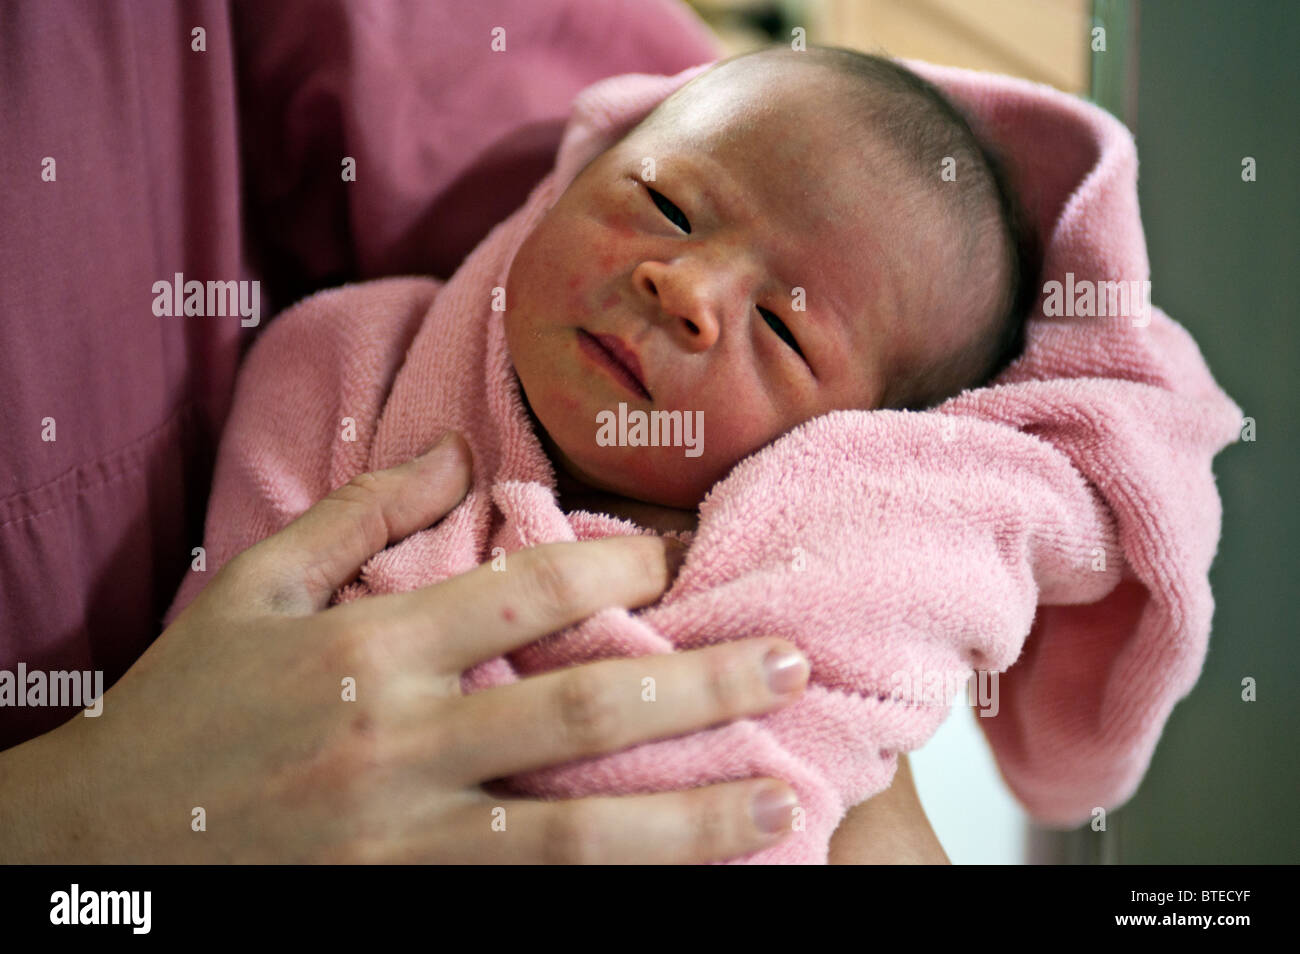 Neugeborenes Baby gewickelt Handtuch statt durch Krankenschwester, Nahaufnahme portrait Stockfoto